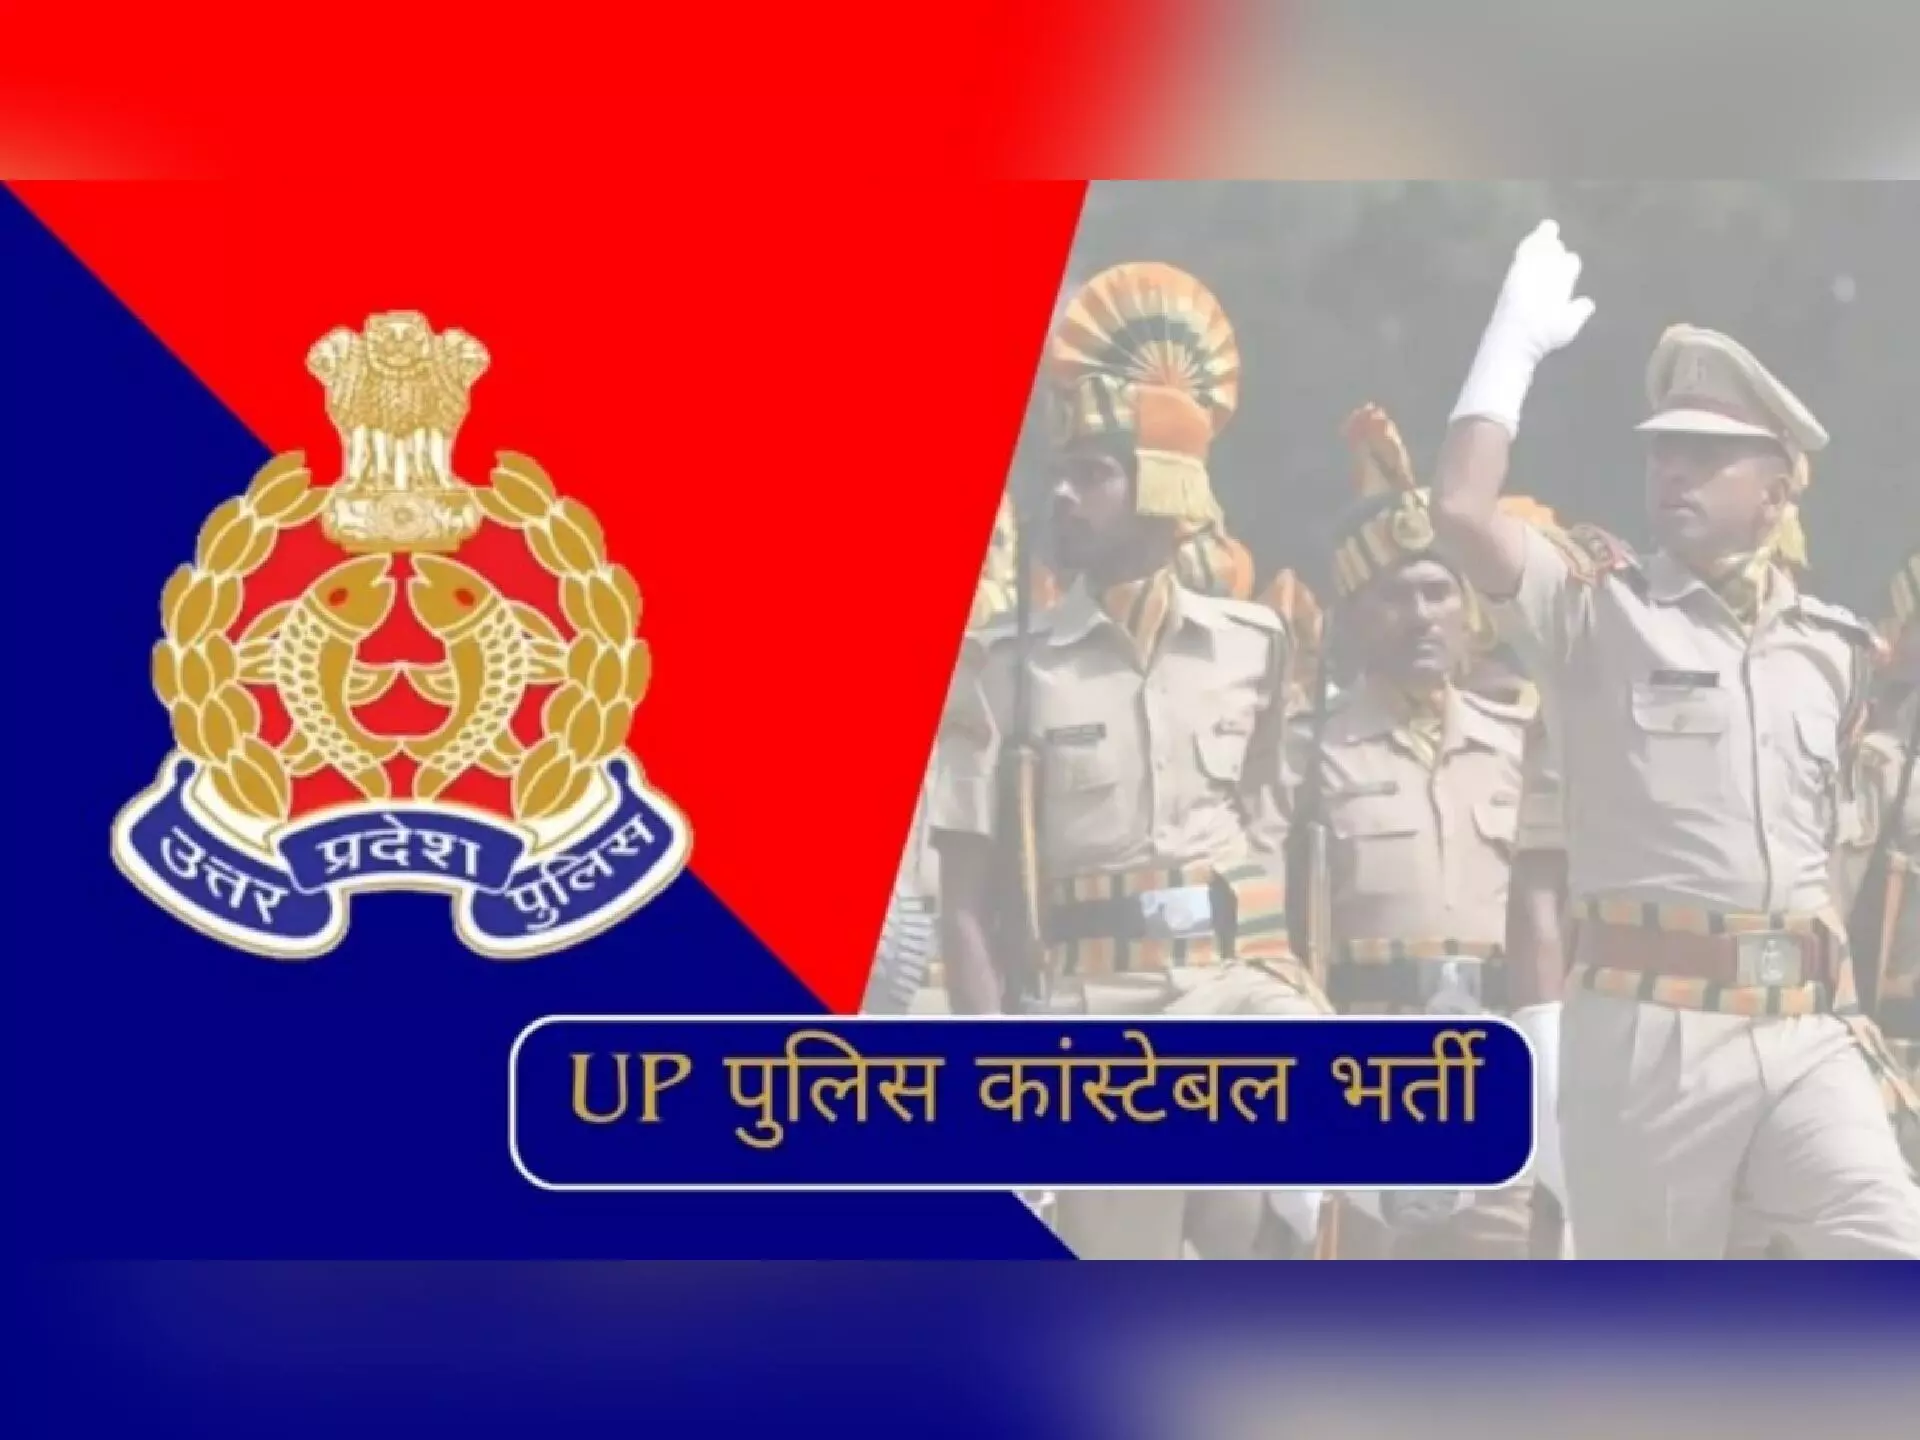 UP पुलिस कांस्टेबल भर्ती: 17 फरवरी से होगा एग्जाम, जाने कब जारी होंगे एडमिट कार्ड